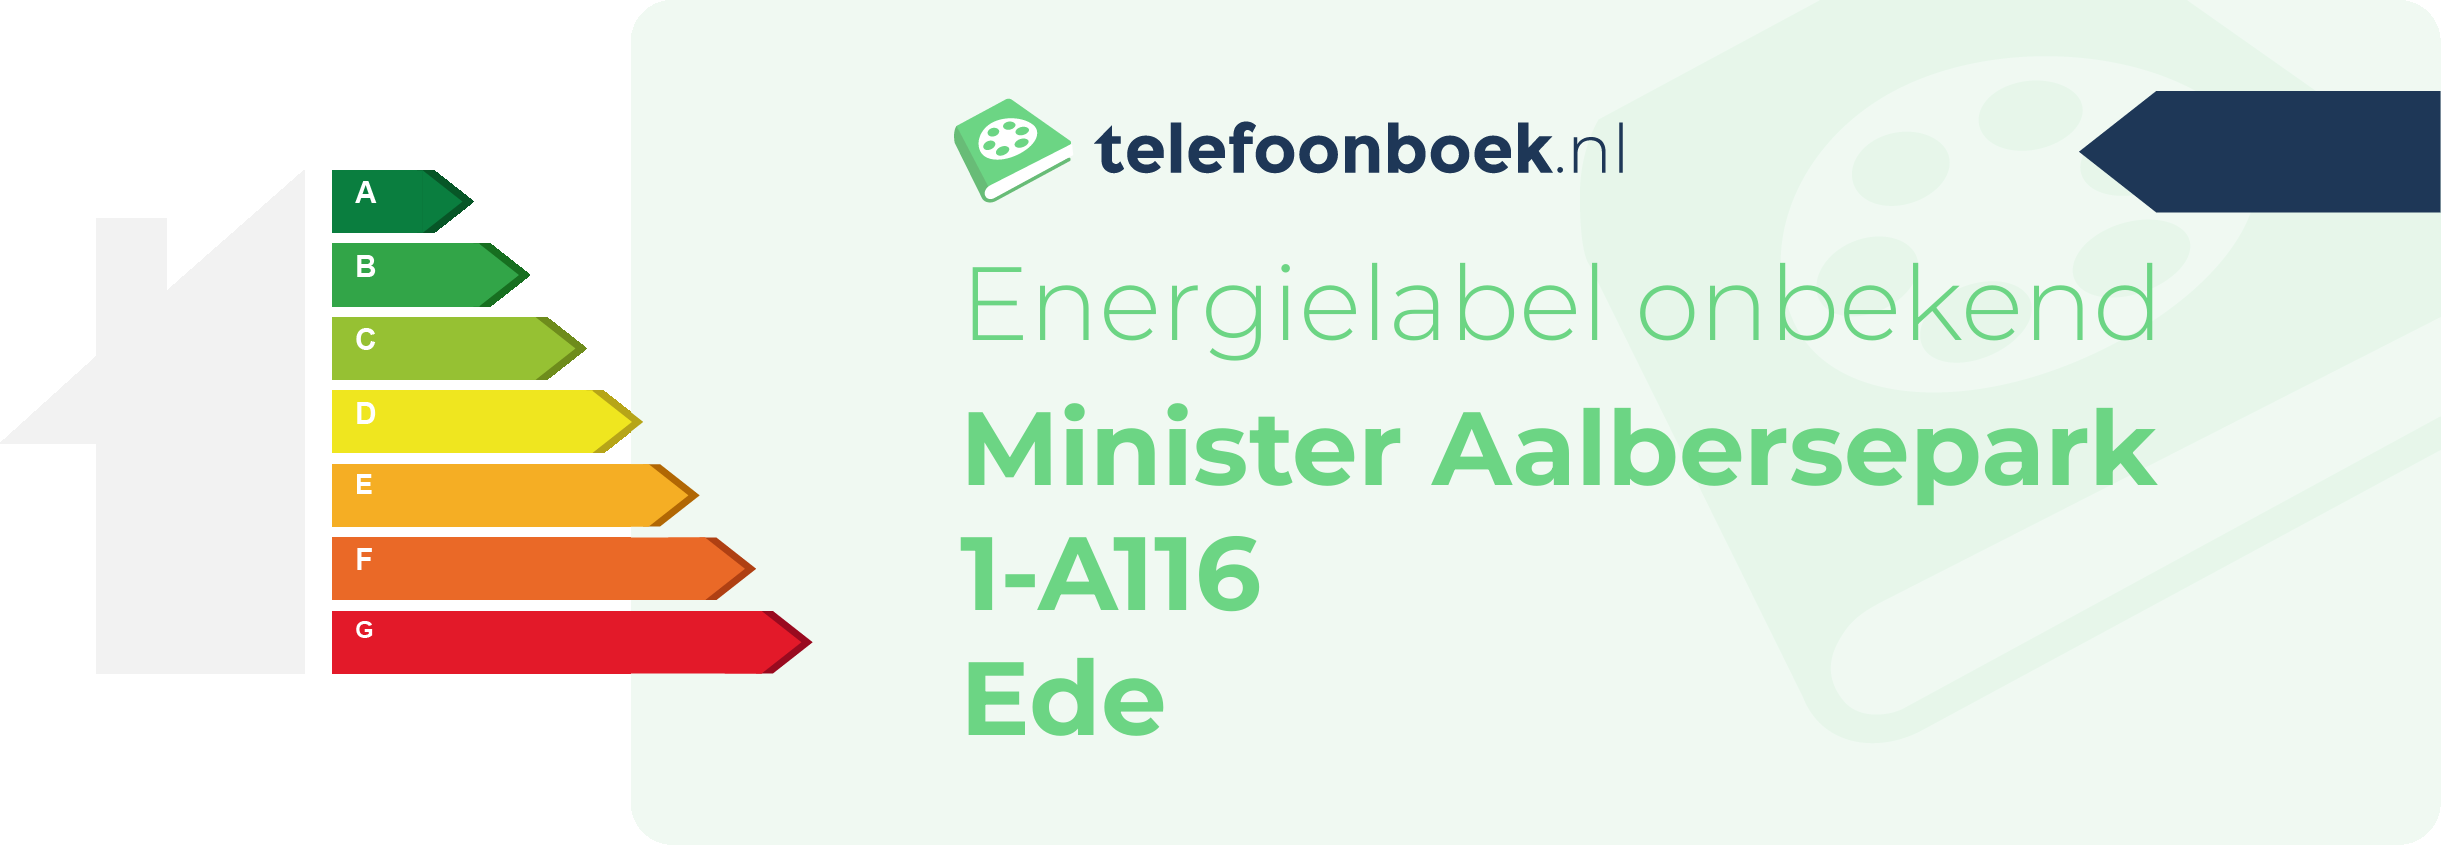 Energielabel Minister Aalbersepark 1-A116 Ede